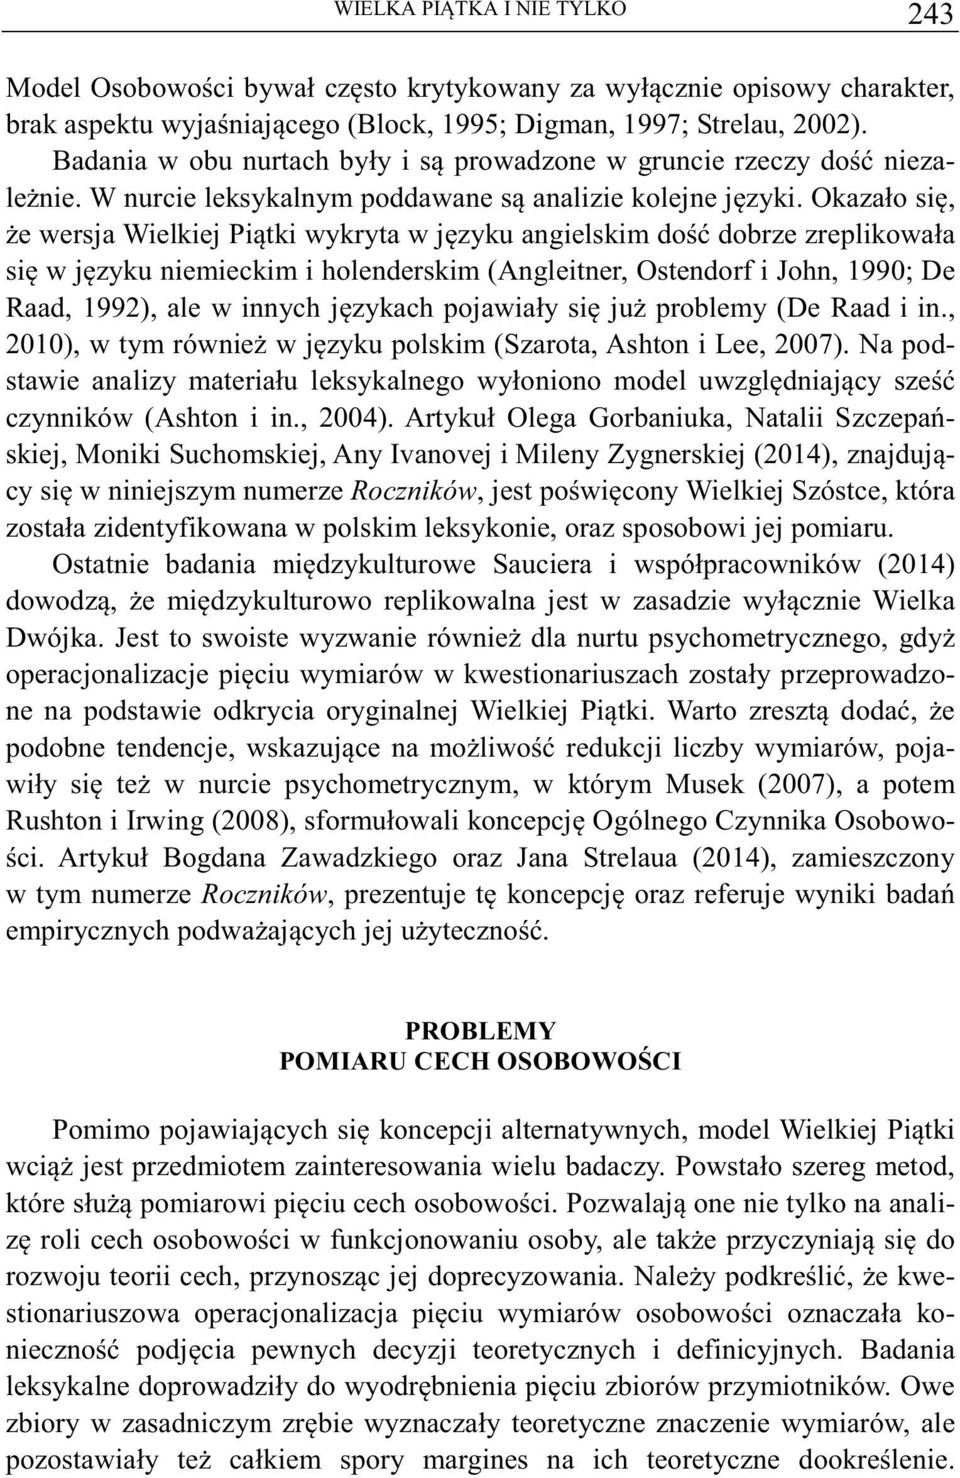 Okazało si, e wersja Wielkiej Pitki wykryta w jzyku angielskim do dobrze zreplikowała si w jzyku niemieckim i holenderskim (Angleitner, Ostendorf i John, 1990; De Raad, 1992), ale w innych jzykach